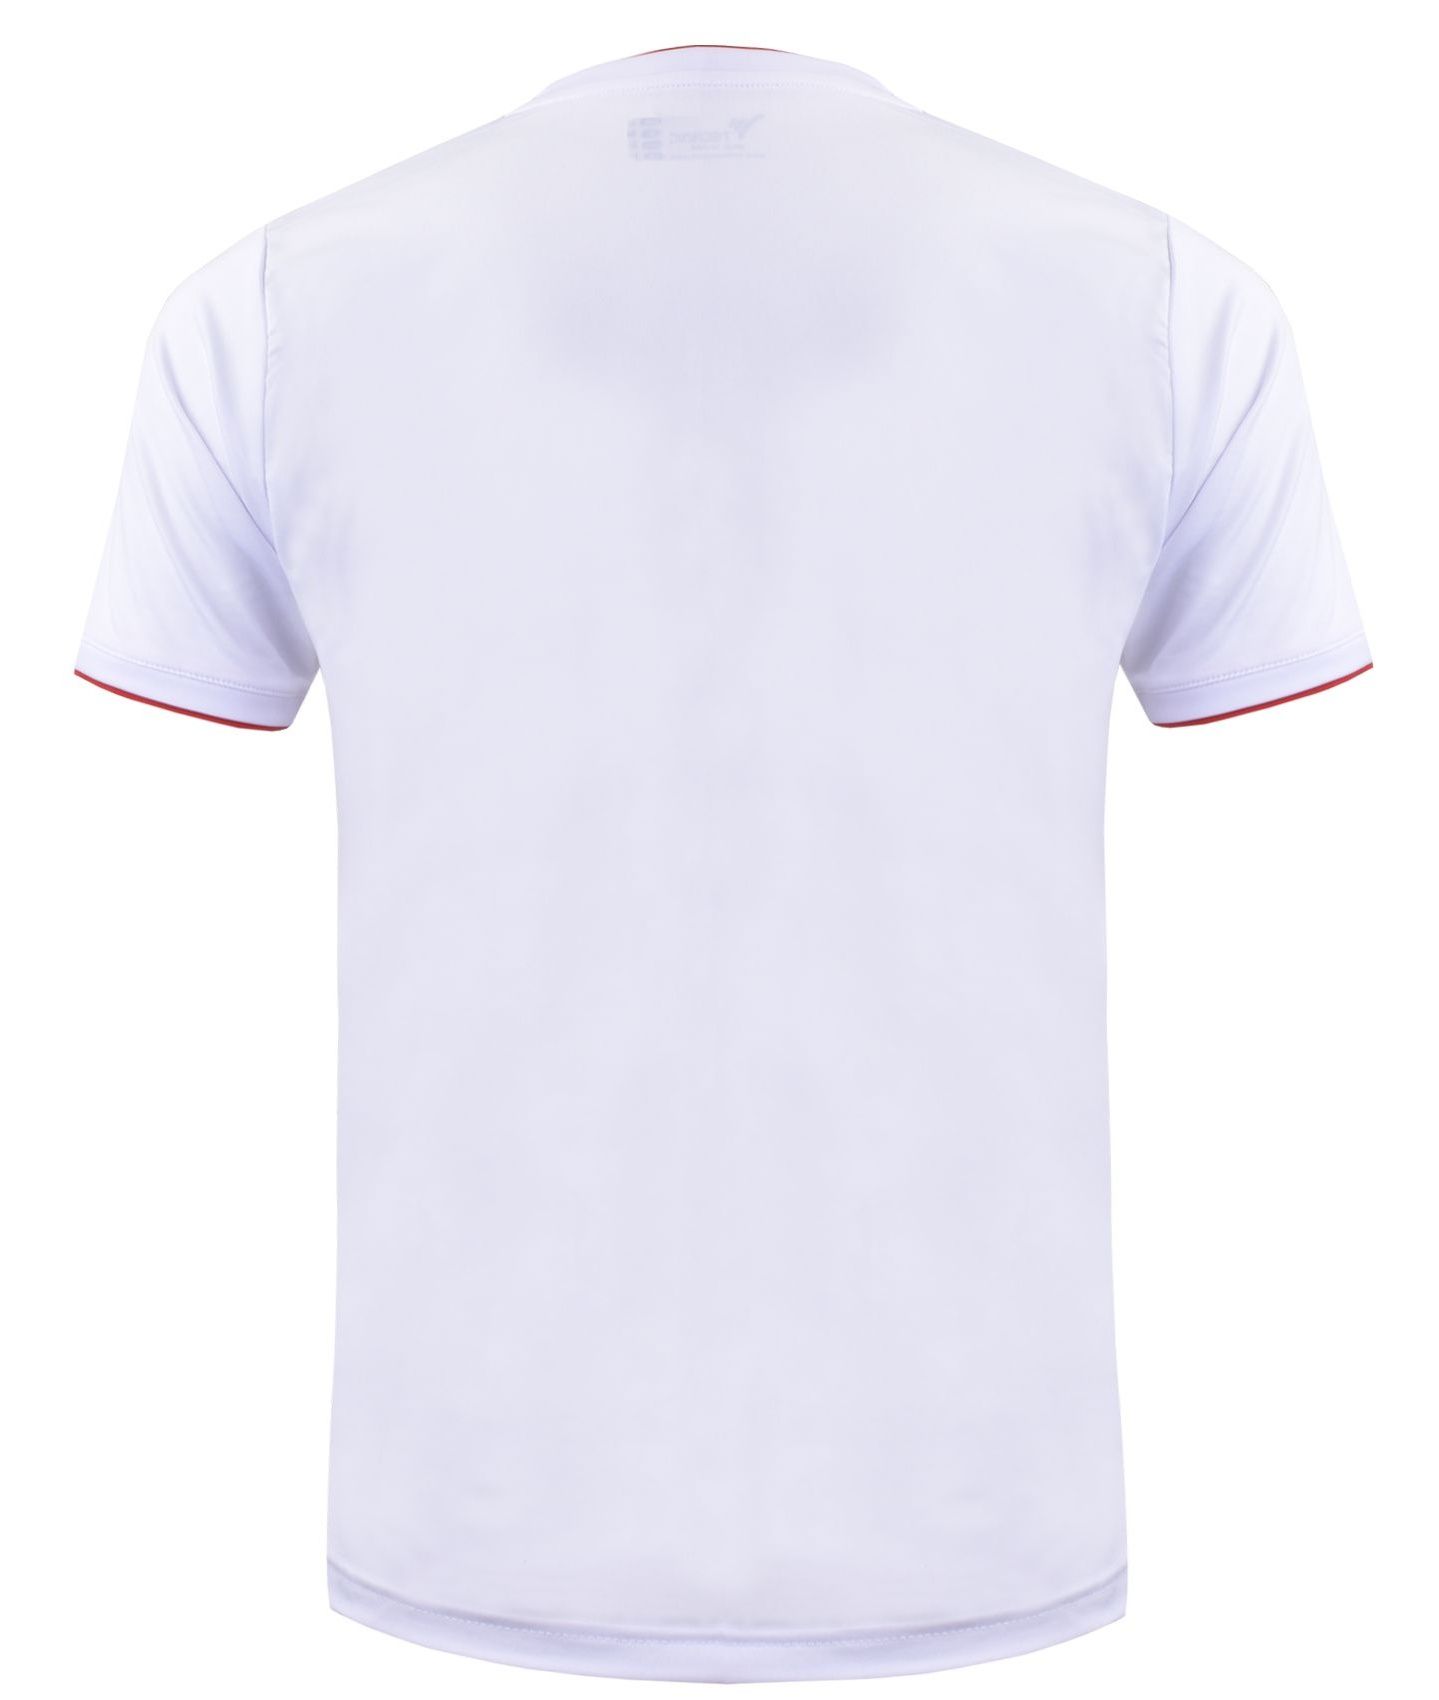 تی شرت ورزشی مردانه تکنیک پلاس 07 کد TS-139-SE-GH -  - 4